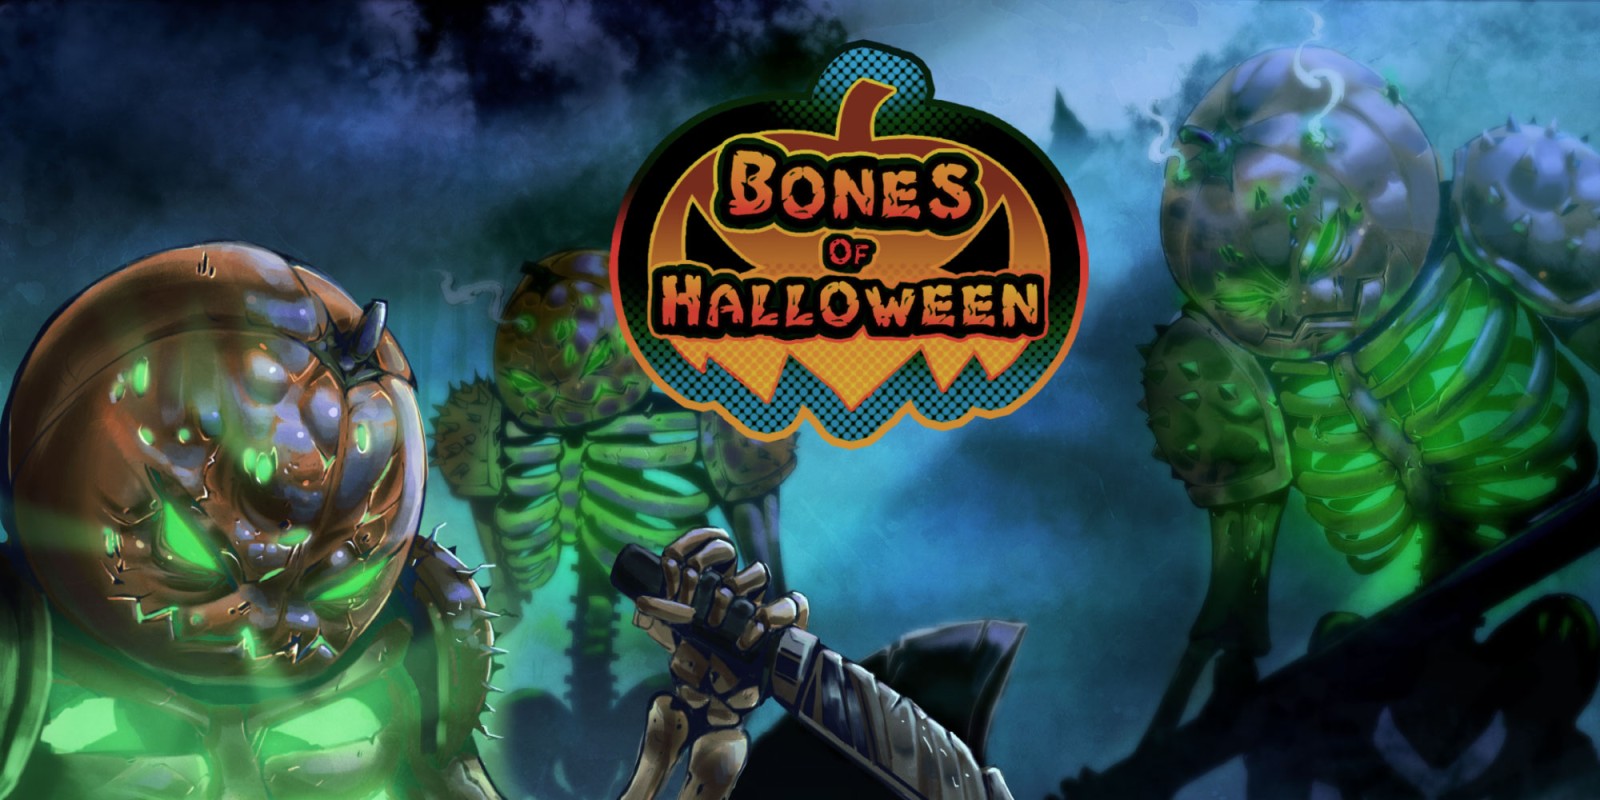 Bones of Halloween